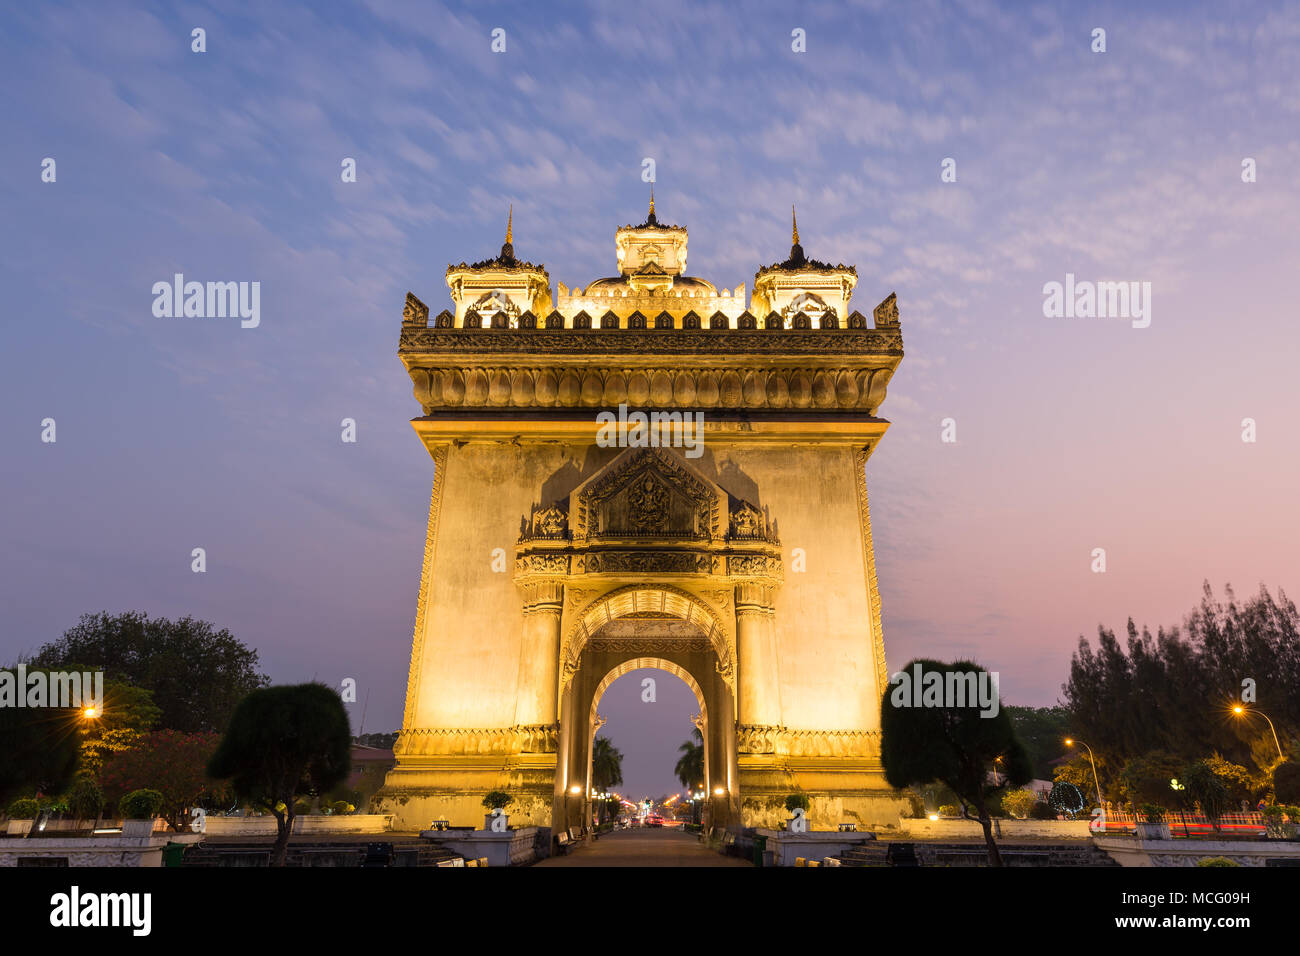 Vista frontale del Patuxai lit (Vittoria gate o gate del trionfo) monumento di guerra in Vientiane, Laos, al tramonto. Foto Stock